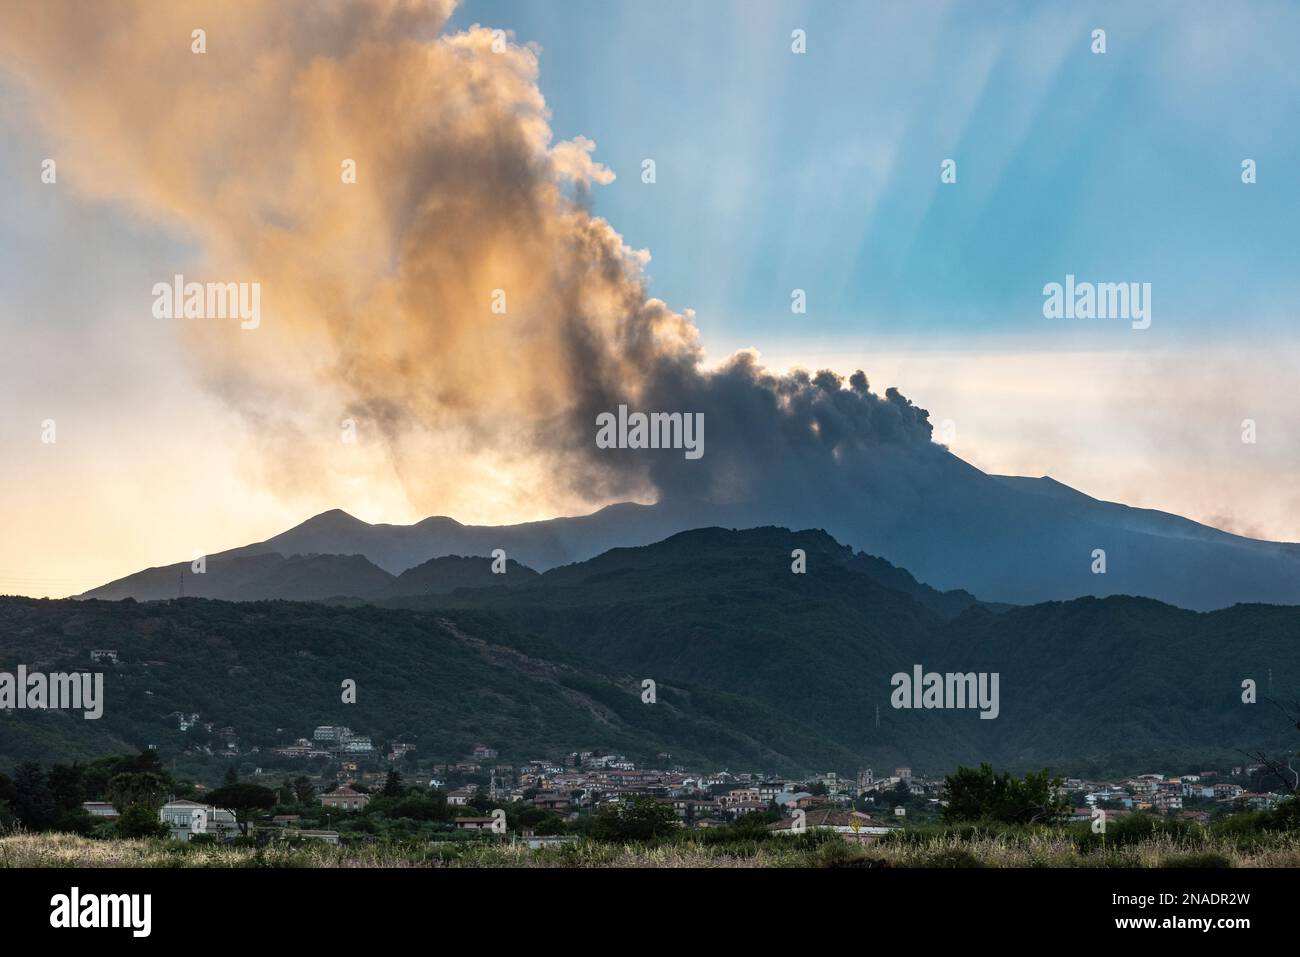 Dichte Wolken vulkanischer Asche, die aus den Kratern auf dem Ätna, Sizilien, emittiert werden, der über der Stadt Zafferana Etnea im Vordergrund thront Stockfoto